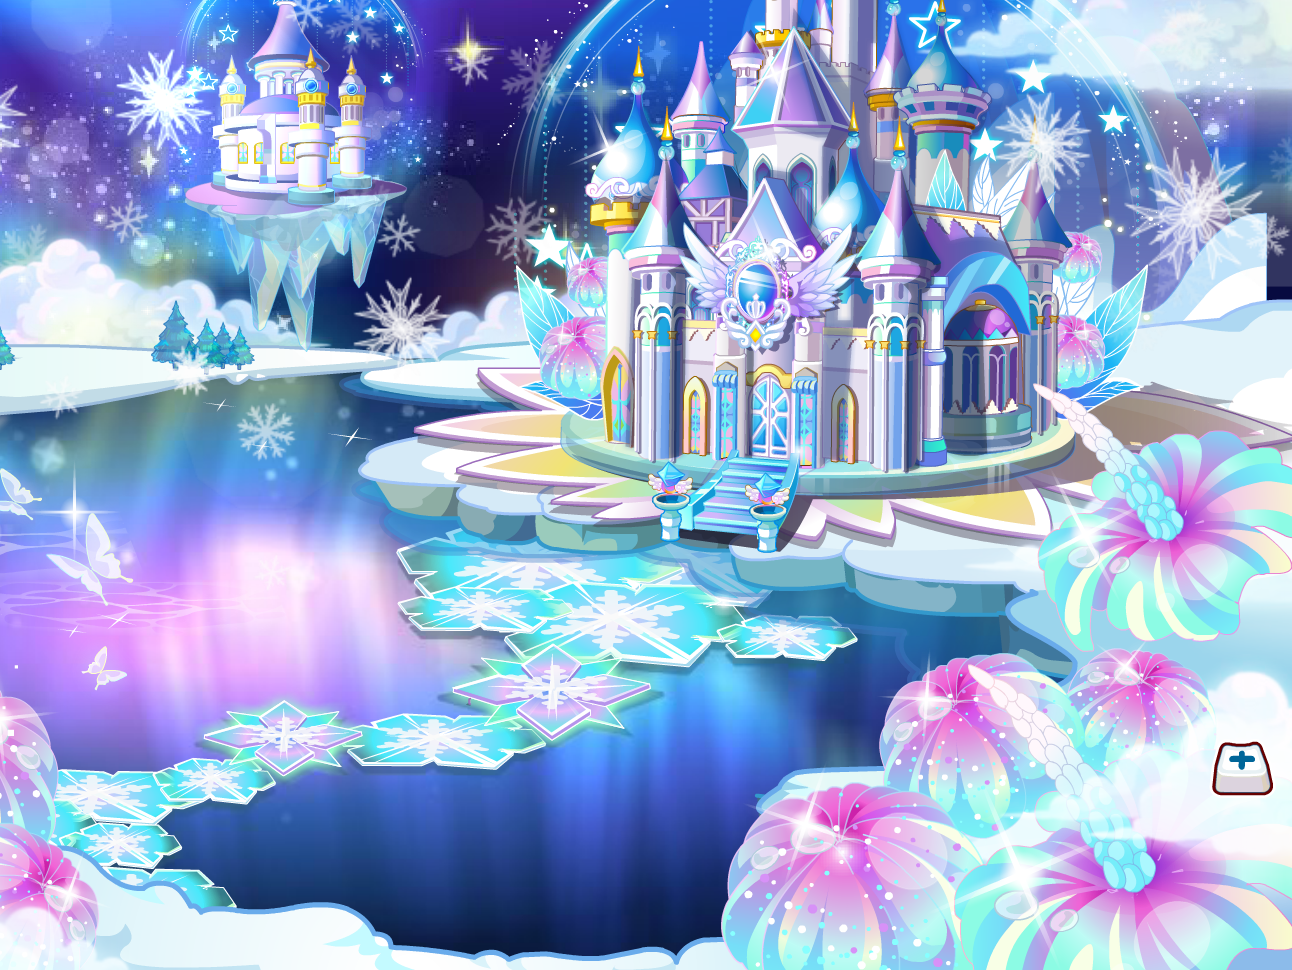 心仪 奥比岛幻境魔镜城堡 奥比岛绝版家具全景房型 幻境城堡 人气